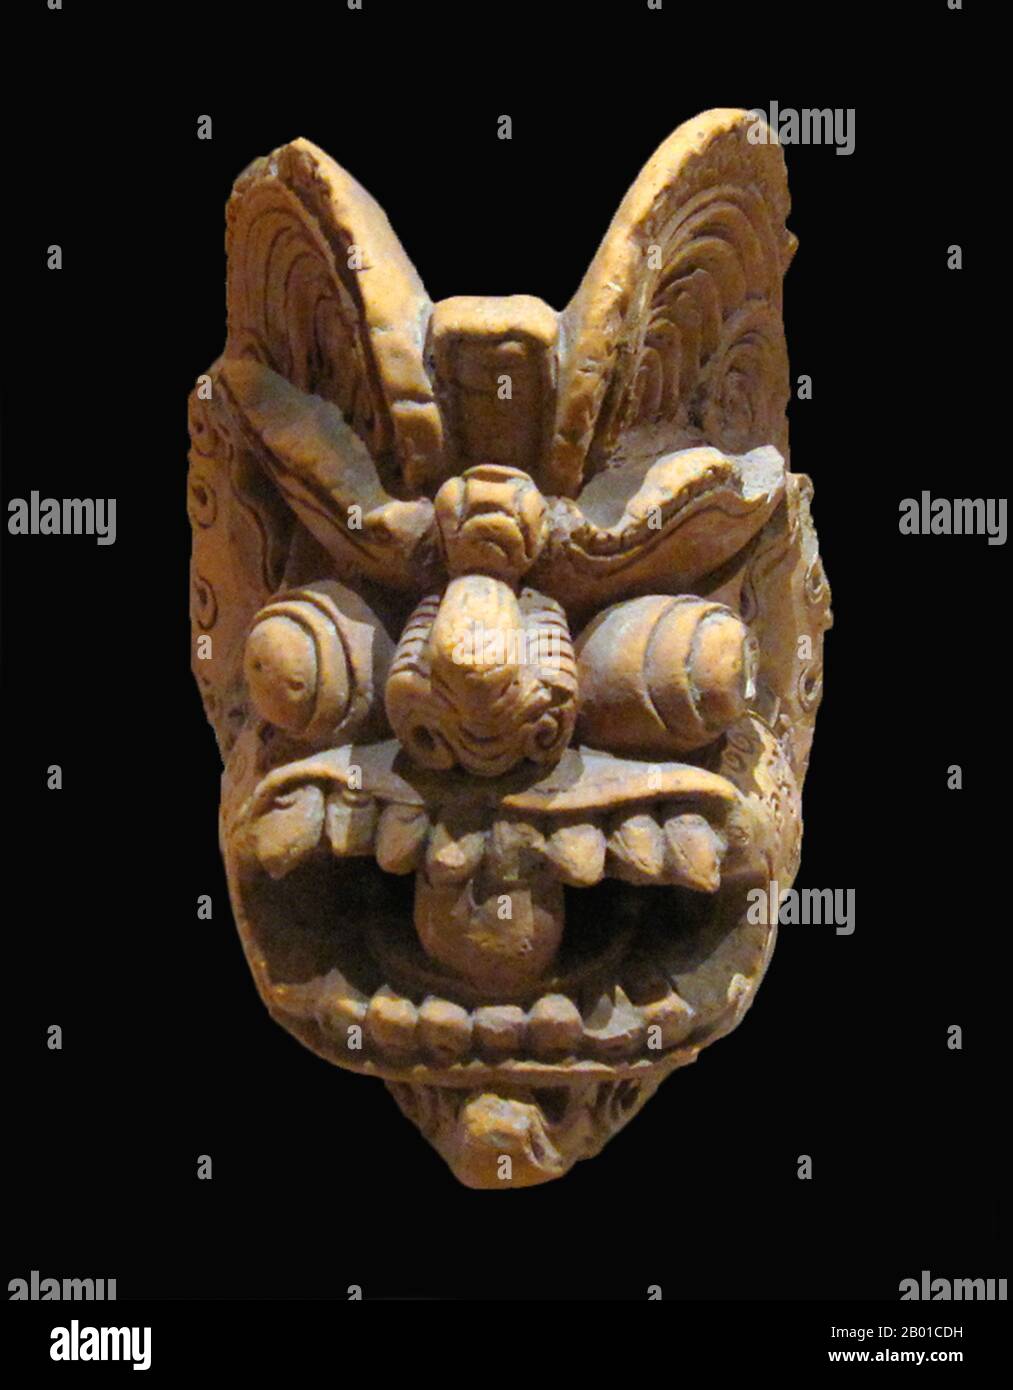 Vietnam: Una testa di drago, terracotta, dinastia Lý, 11th-13th ° secolo. Museo Nazionale di Storia vietnamita, Hanoi. Foto di Gryffindor - Jbarta (CC BY-SA 3,0 License). Foto Stock